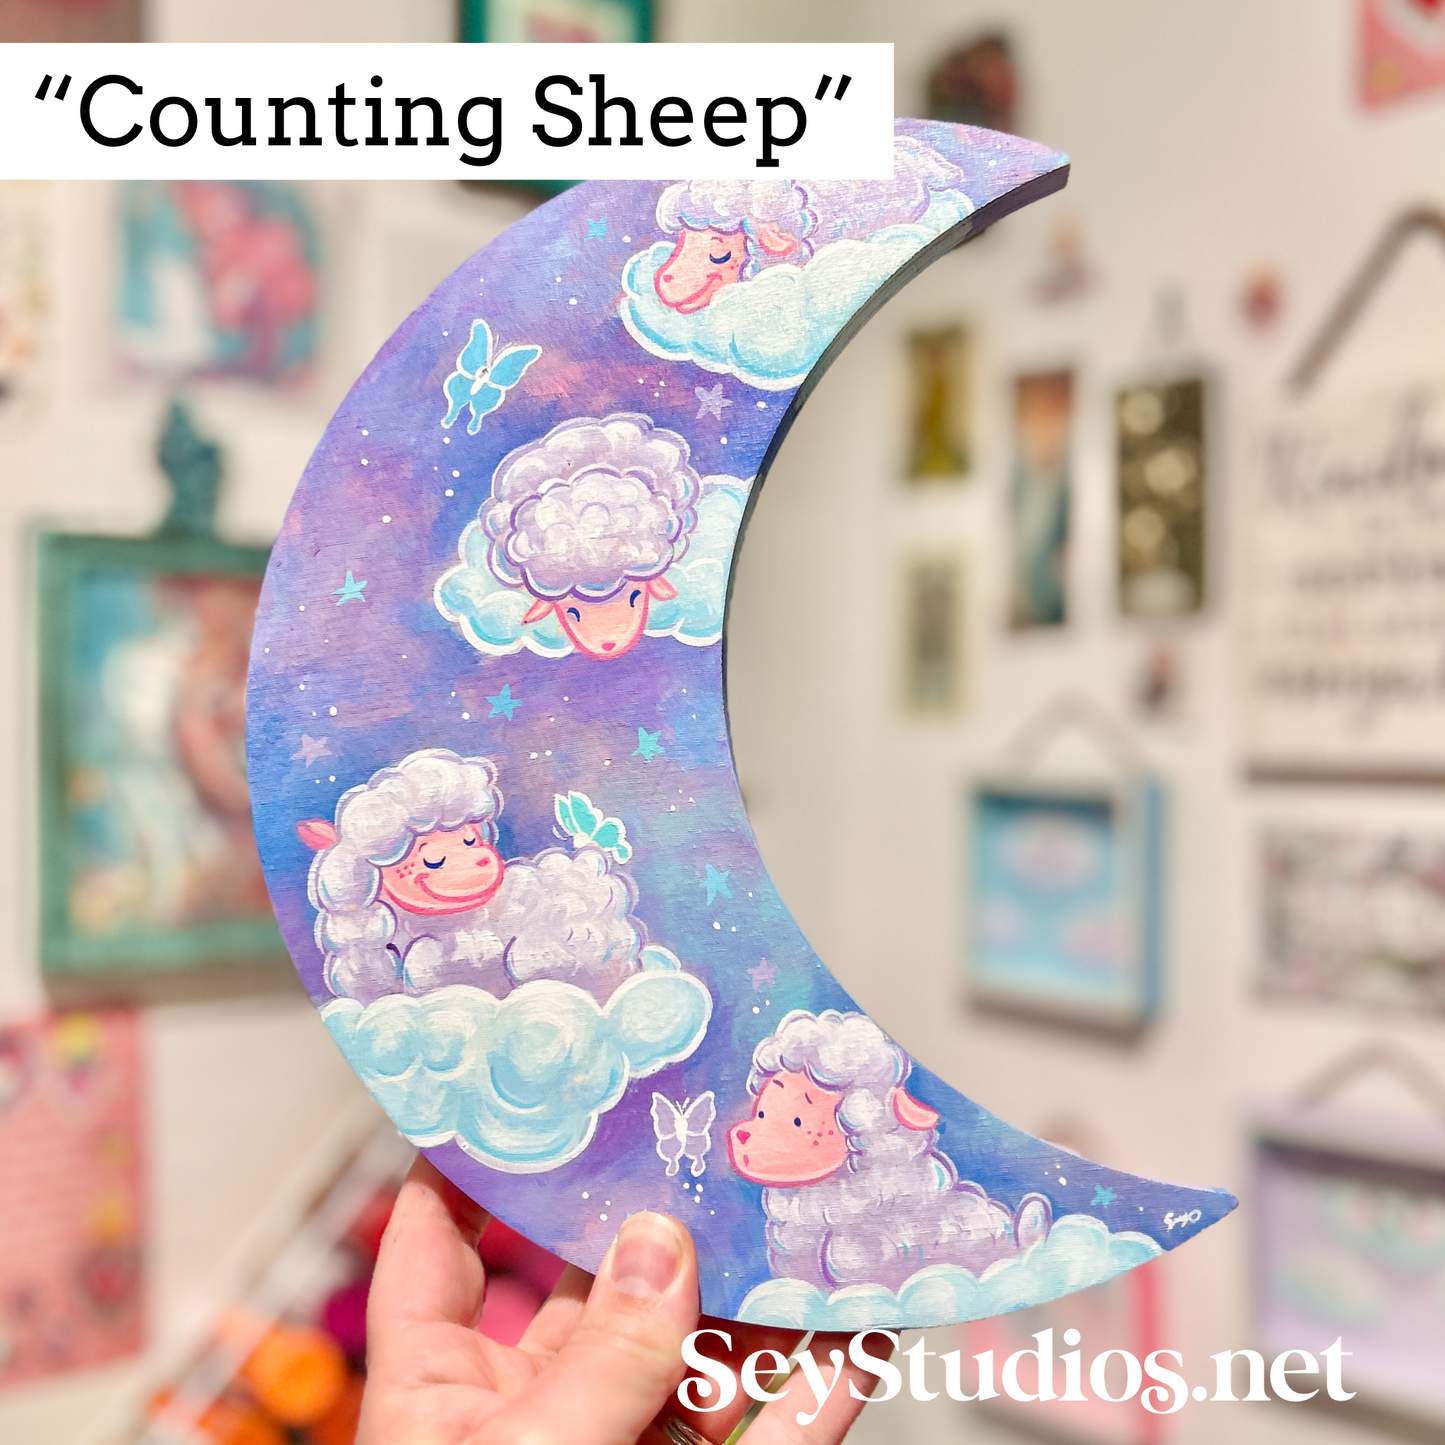 Original - “Counting Sheep”